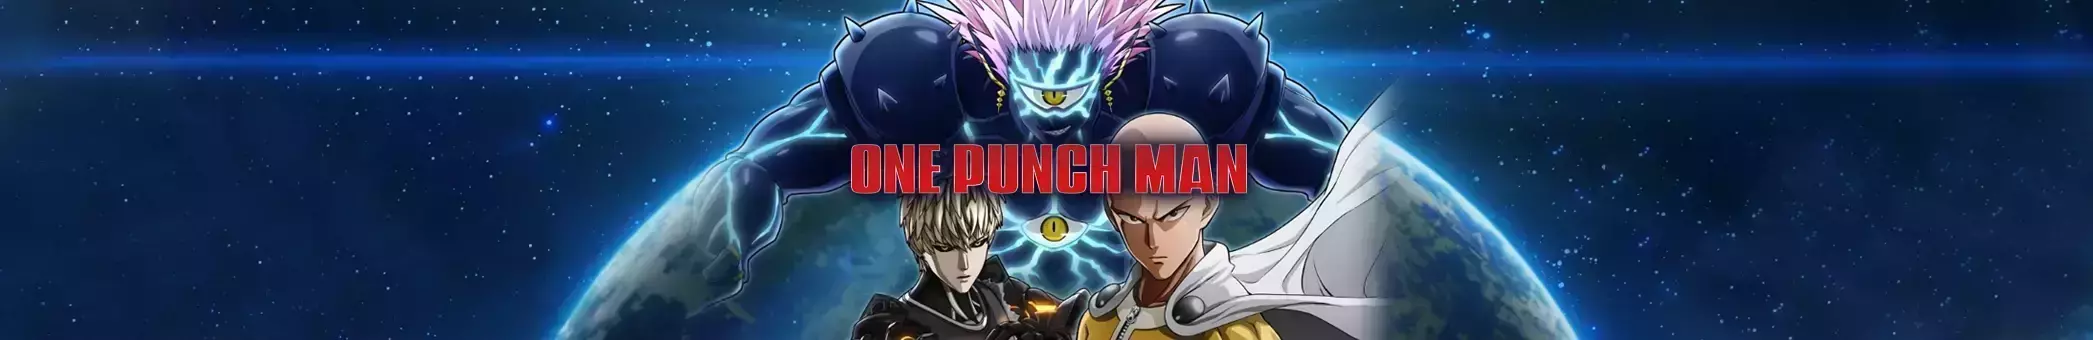 One Punch Man Digital Edition